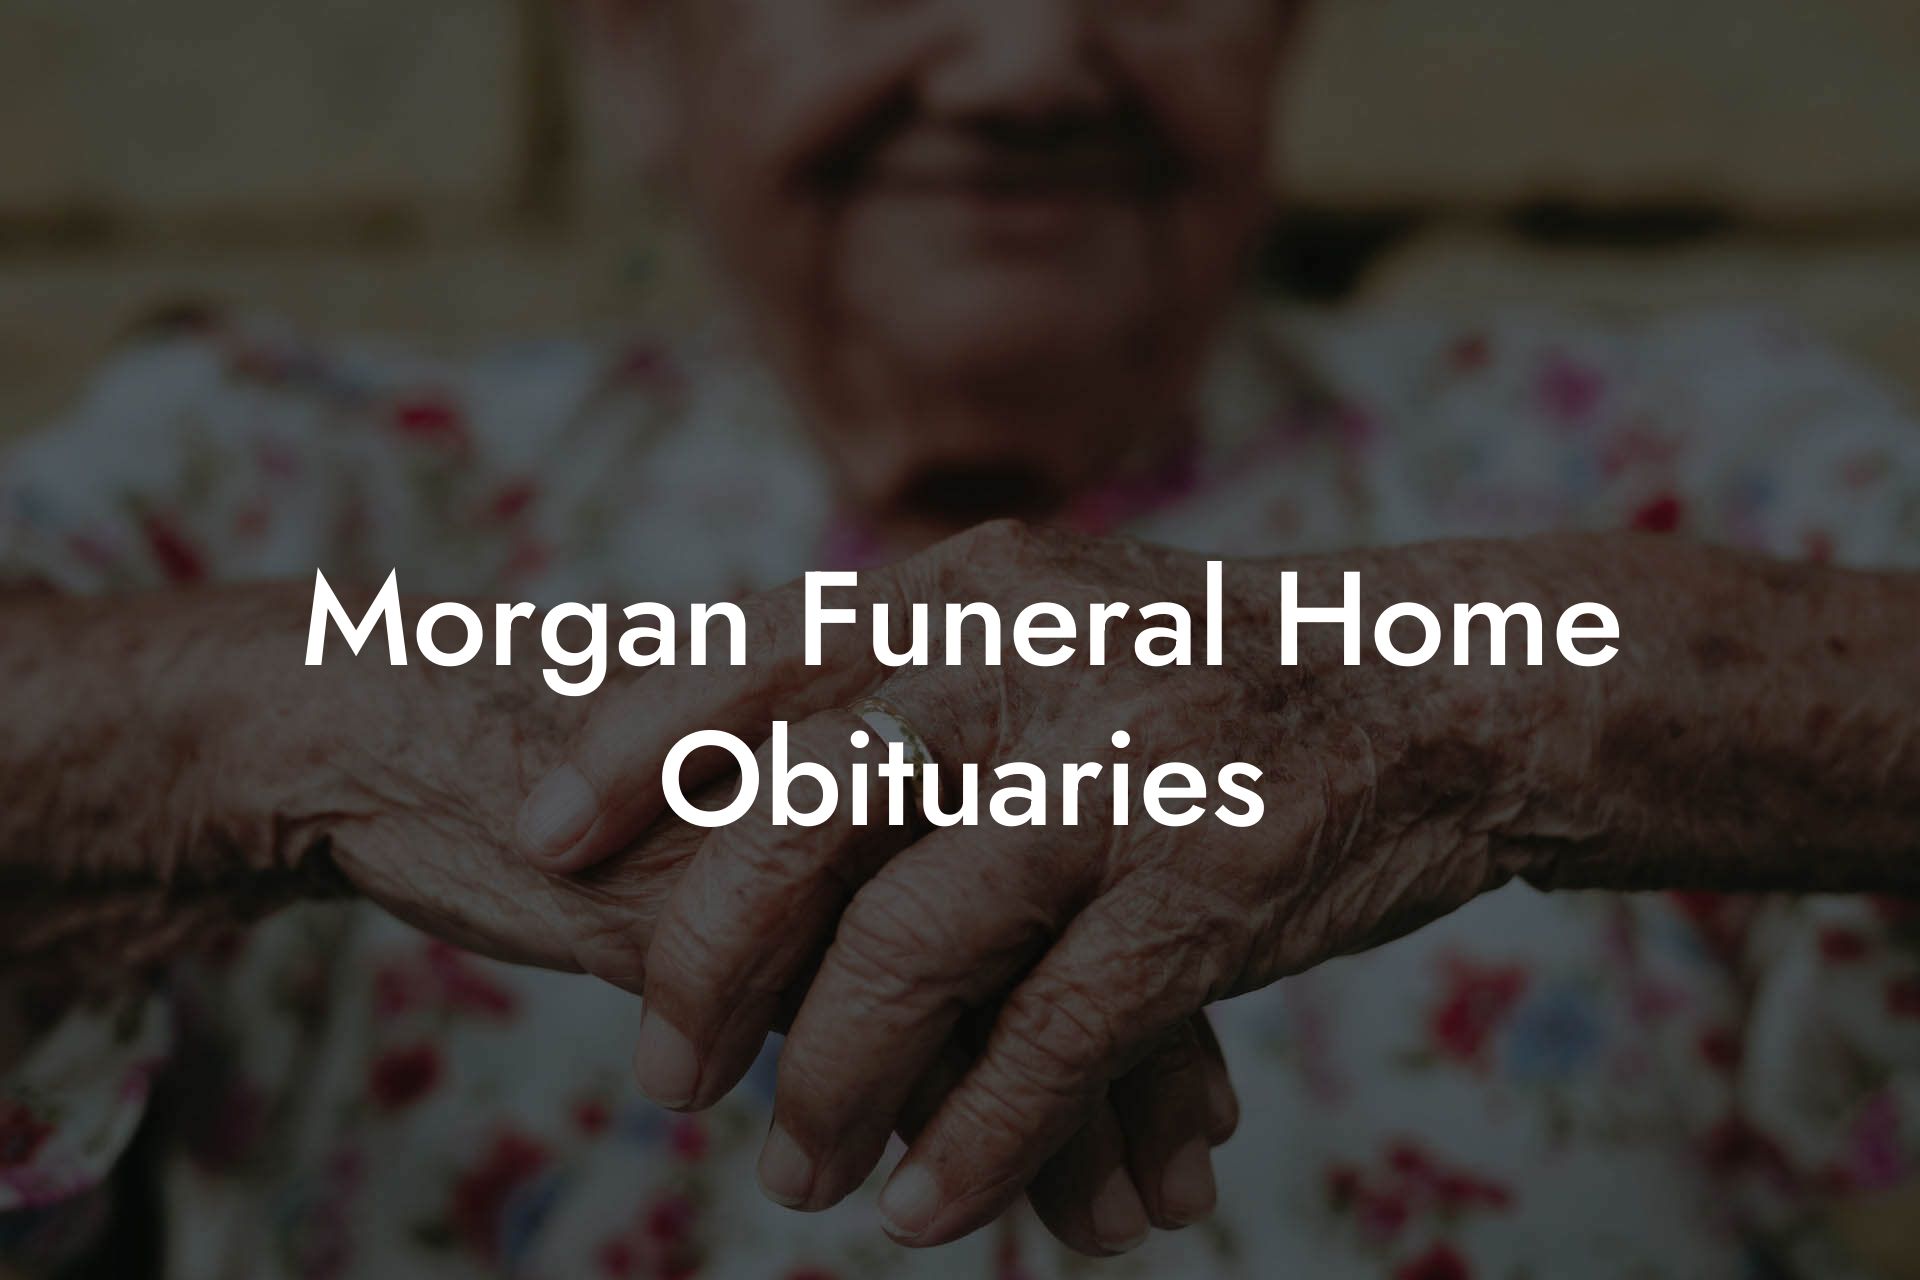 Morgan Funeral Home Obituaries